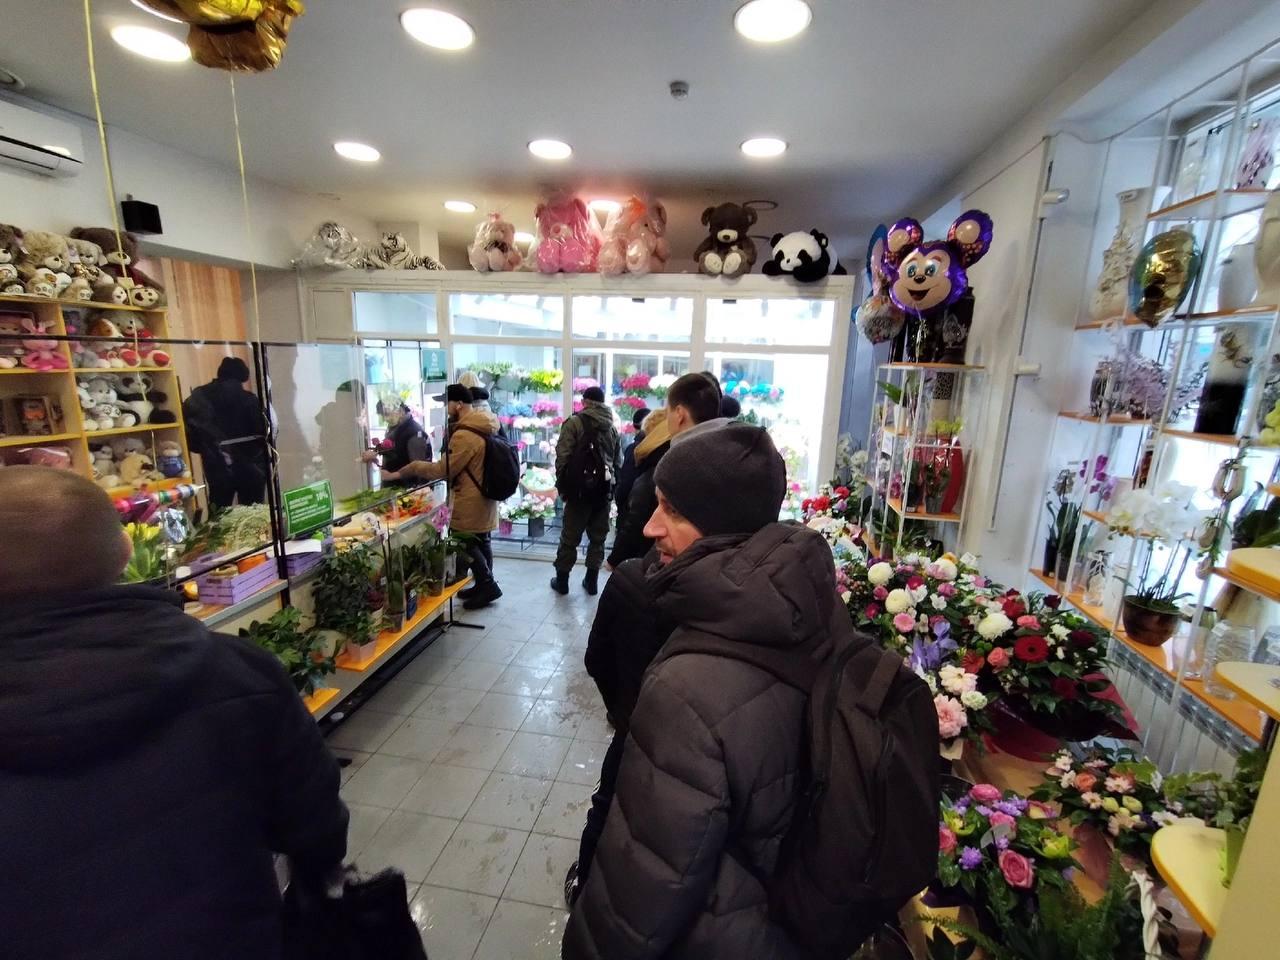 Фото В Новосибирске мужчины выстроились в очереди за цветами 8 марта 2